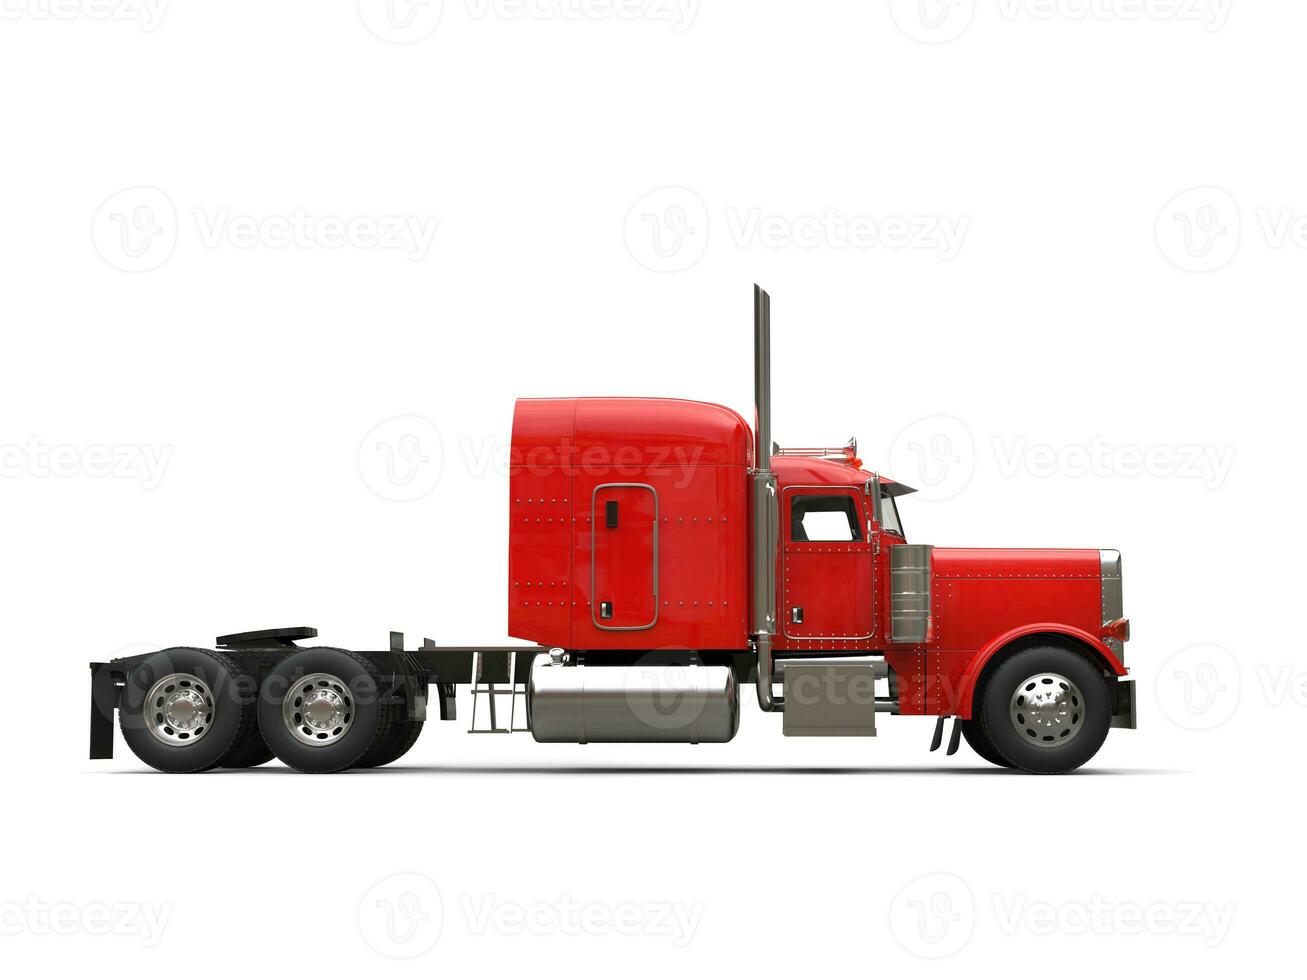 vermelho 18 veículo com rodas caminhão - não reboque - lado Visão foto